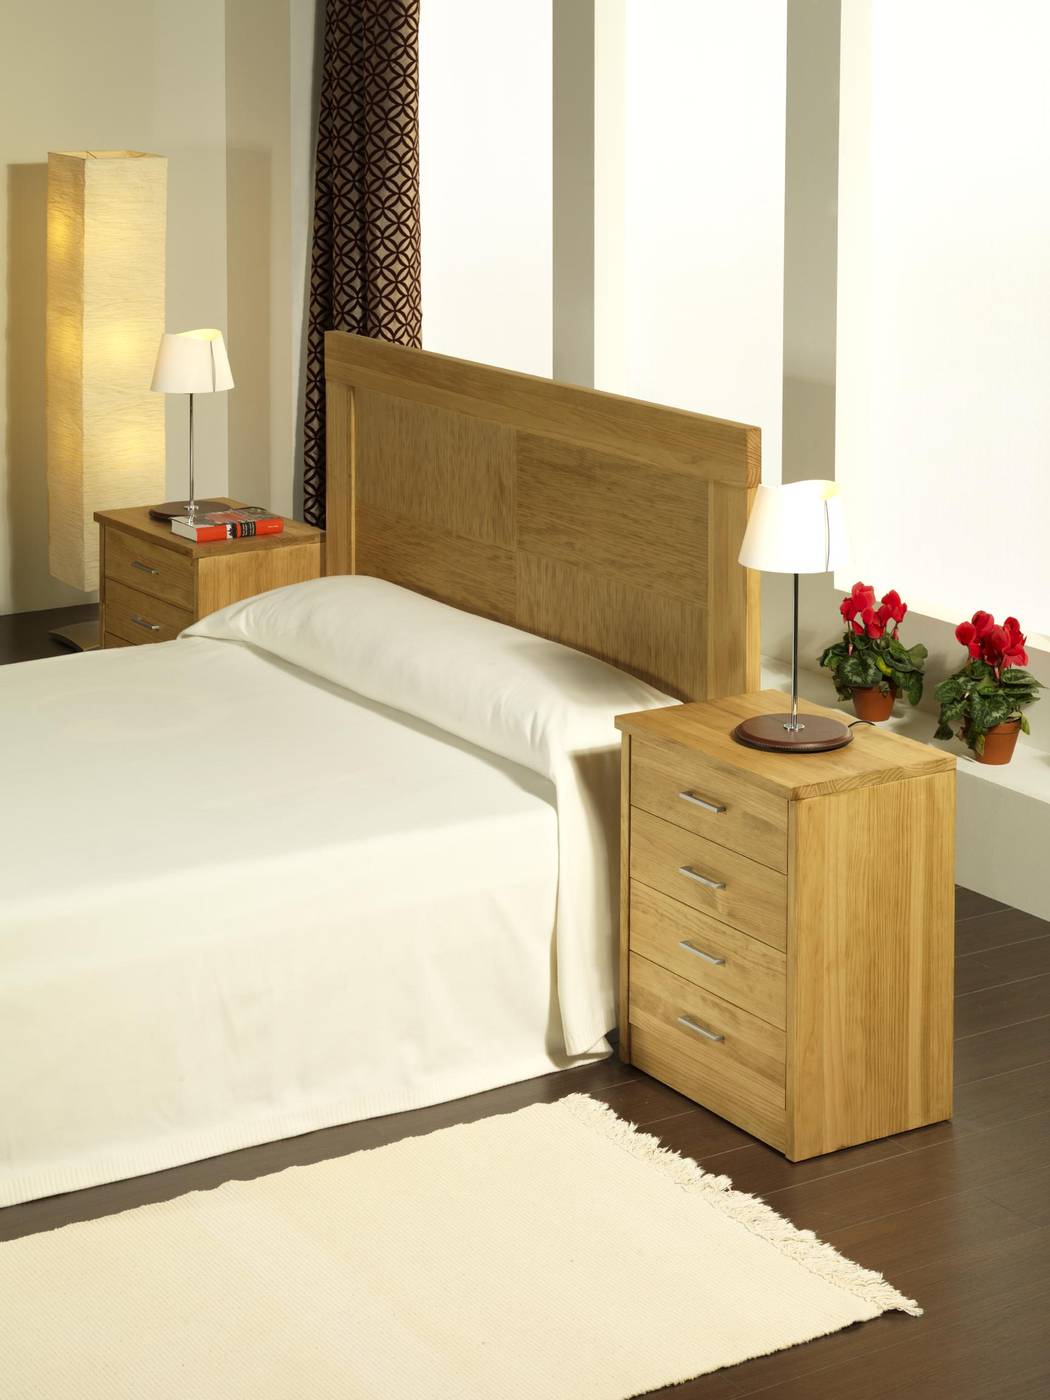 Cabezal Coral Aguas - Cabecero de cama de madera maciza, disponible en varias medidas y colores de madera.